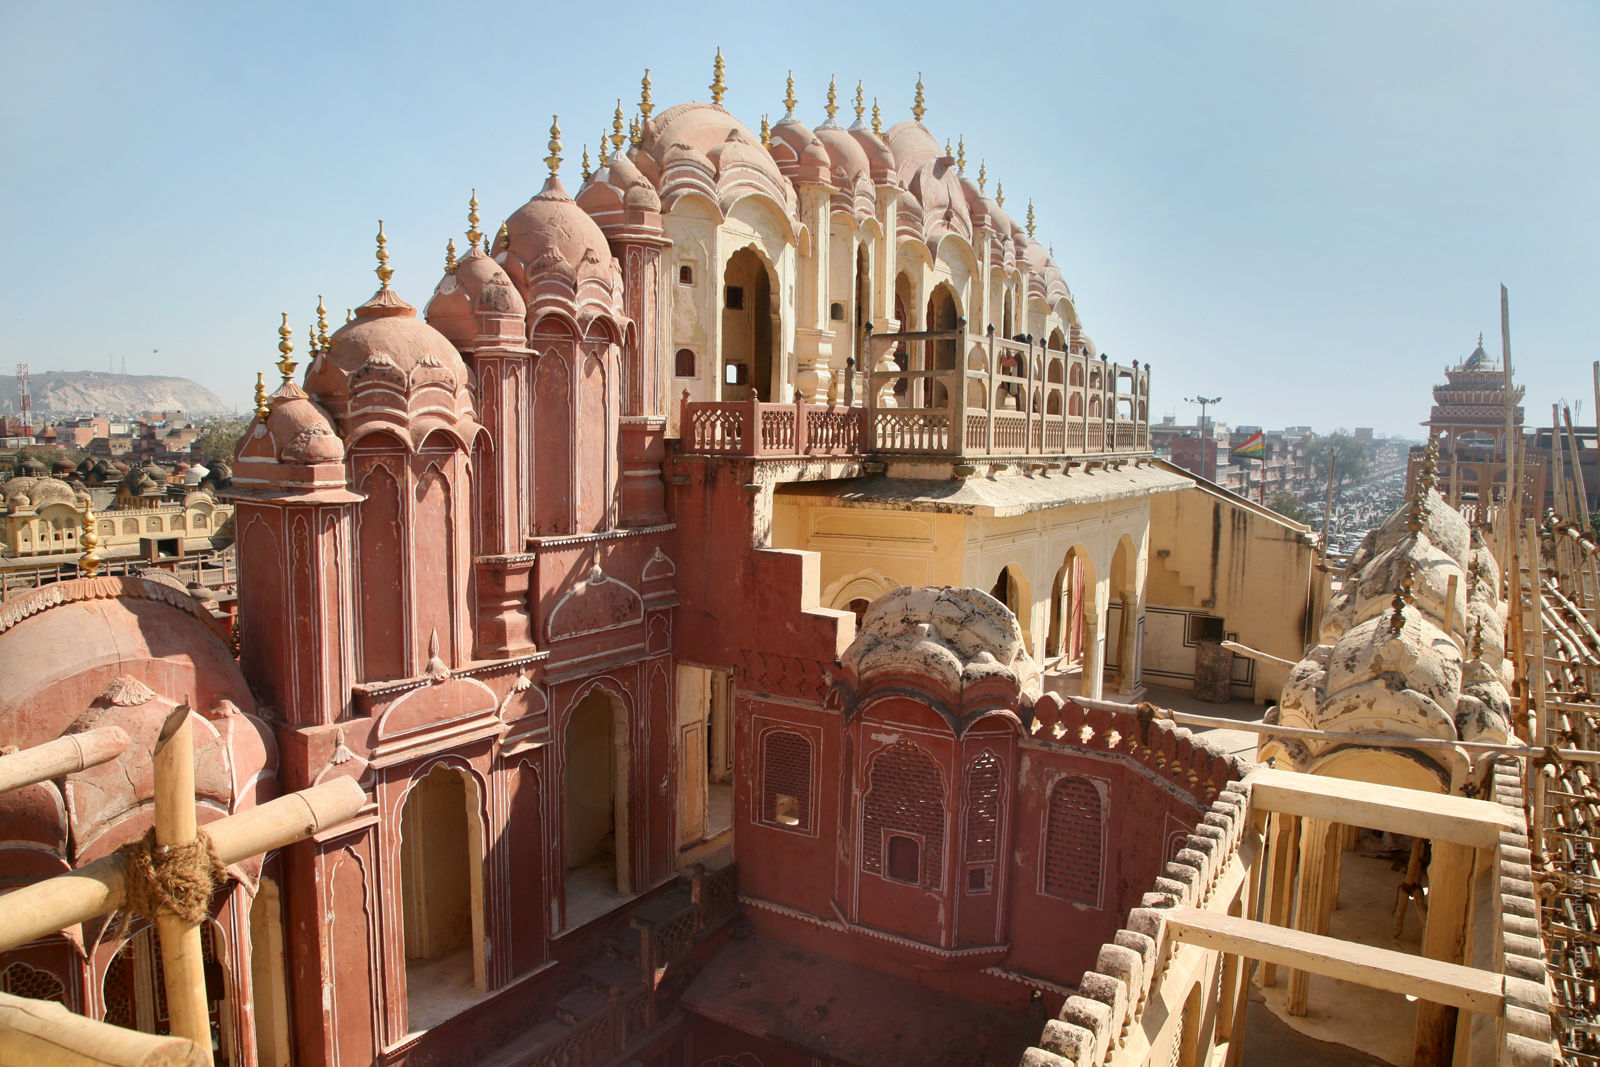 Дворец Ветров Хава-Махал, Джайпур, тур по Золотому Кольцу Индии, бюджетные туры в Индию, 2017 год.